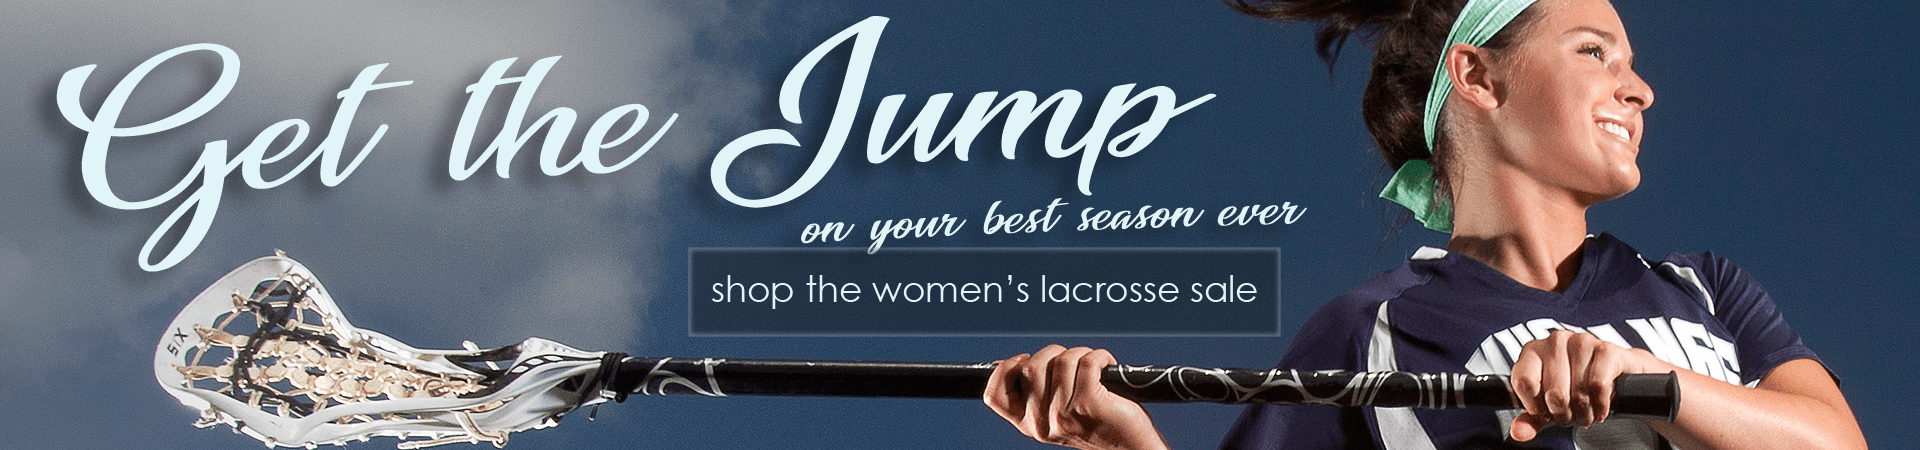 Womens Lacrosse Sale